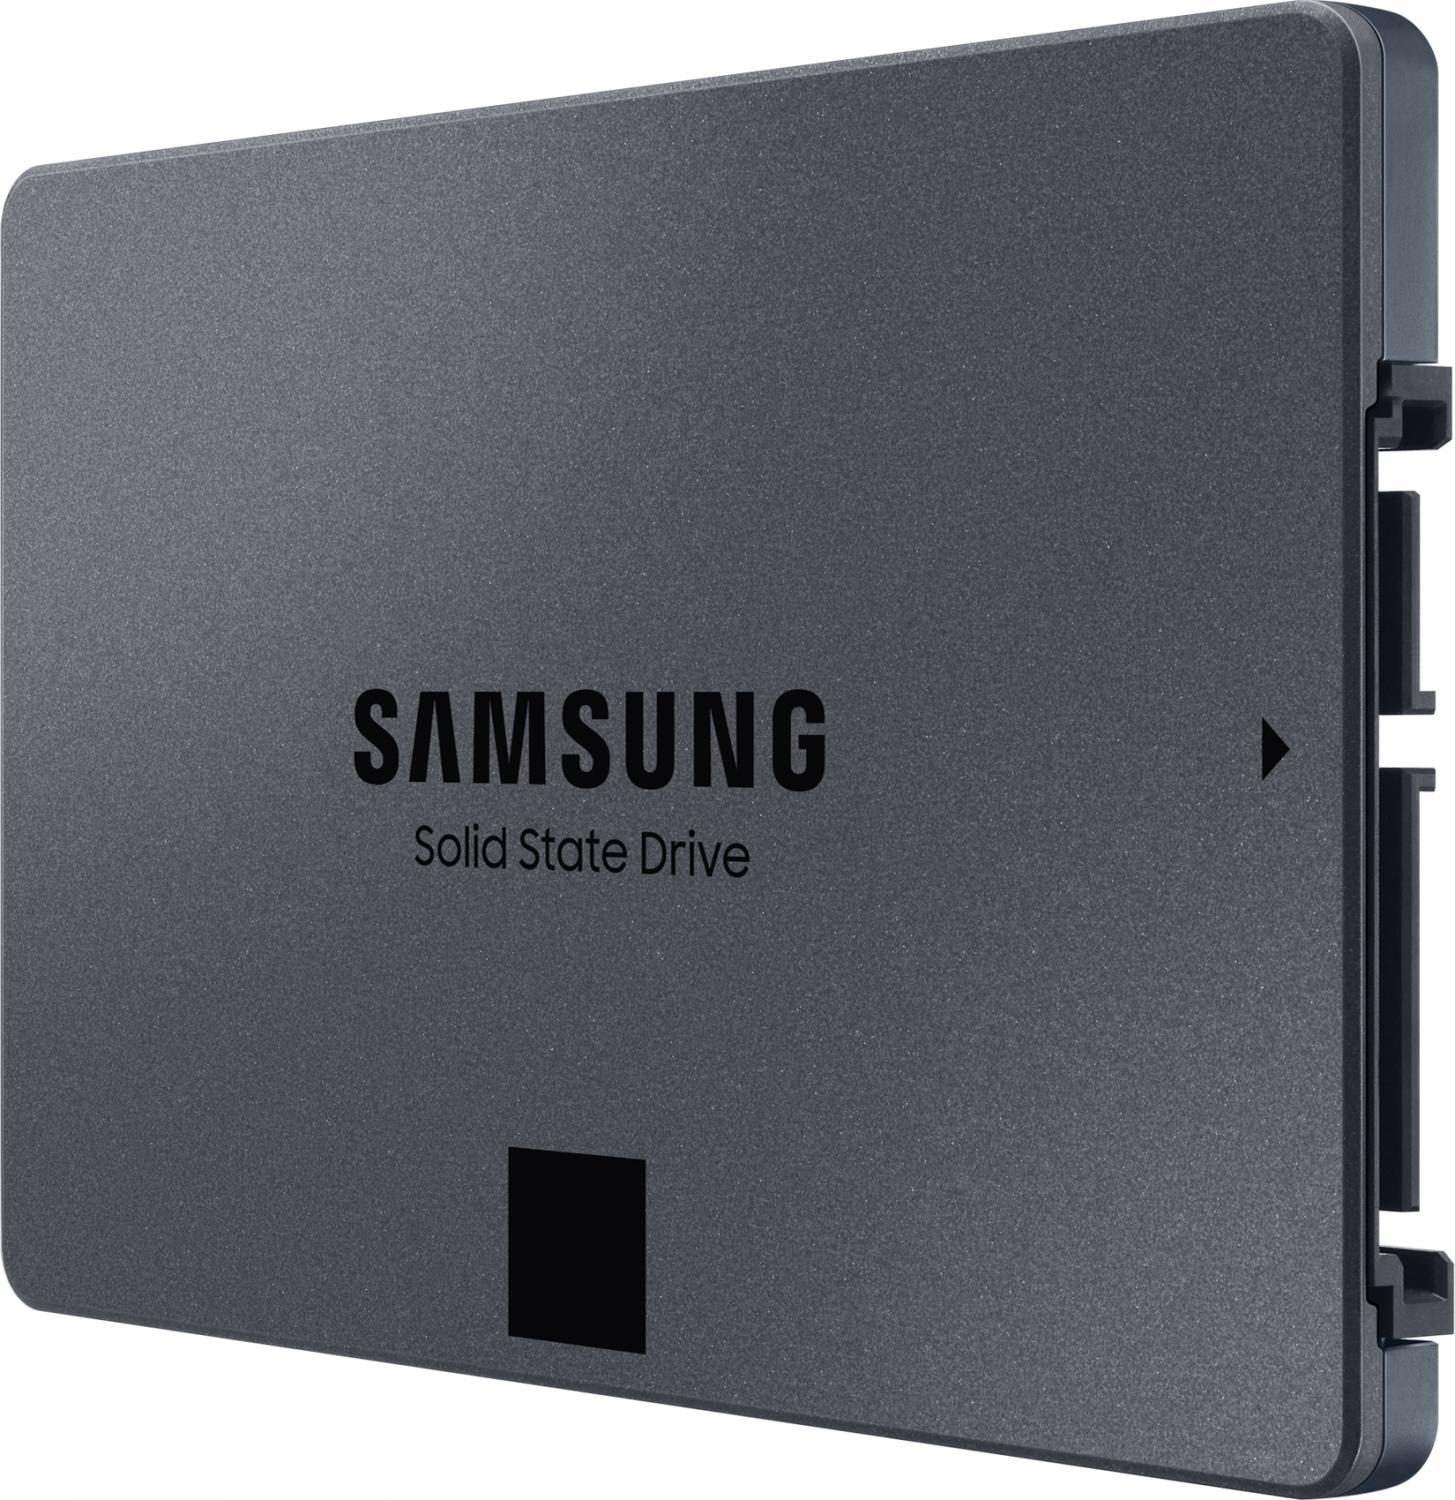 Тведотельный накопитель SSD 2.5" 8Tb (8000GB) Samsung SATA III 870 QVO (R560/W530MB/s) (MZ-77Q8T0BW) 1 year